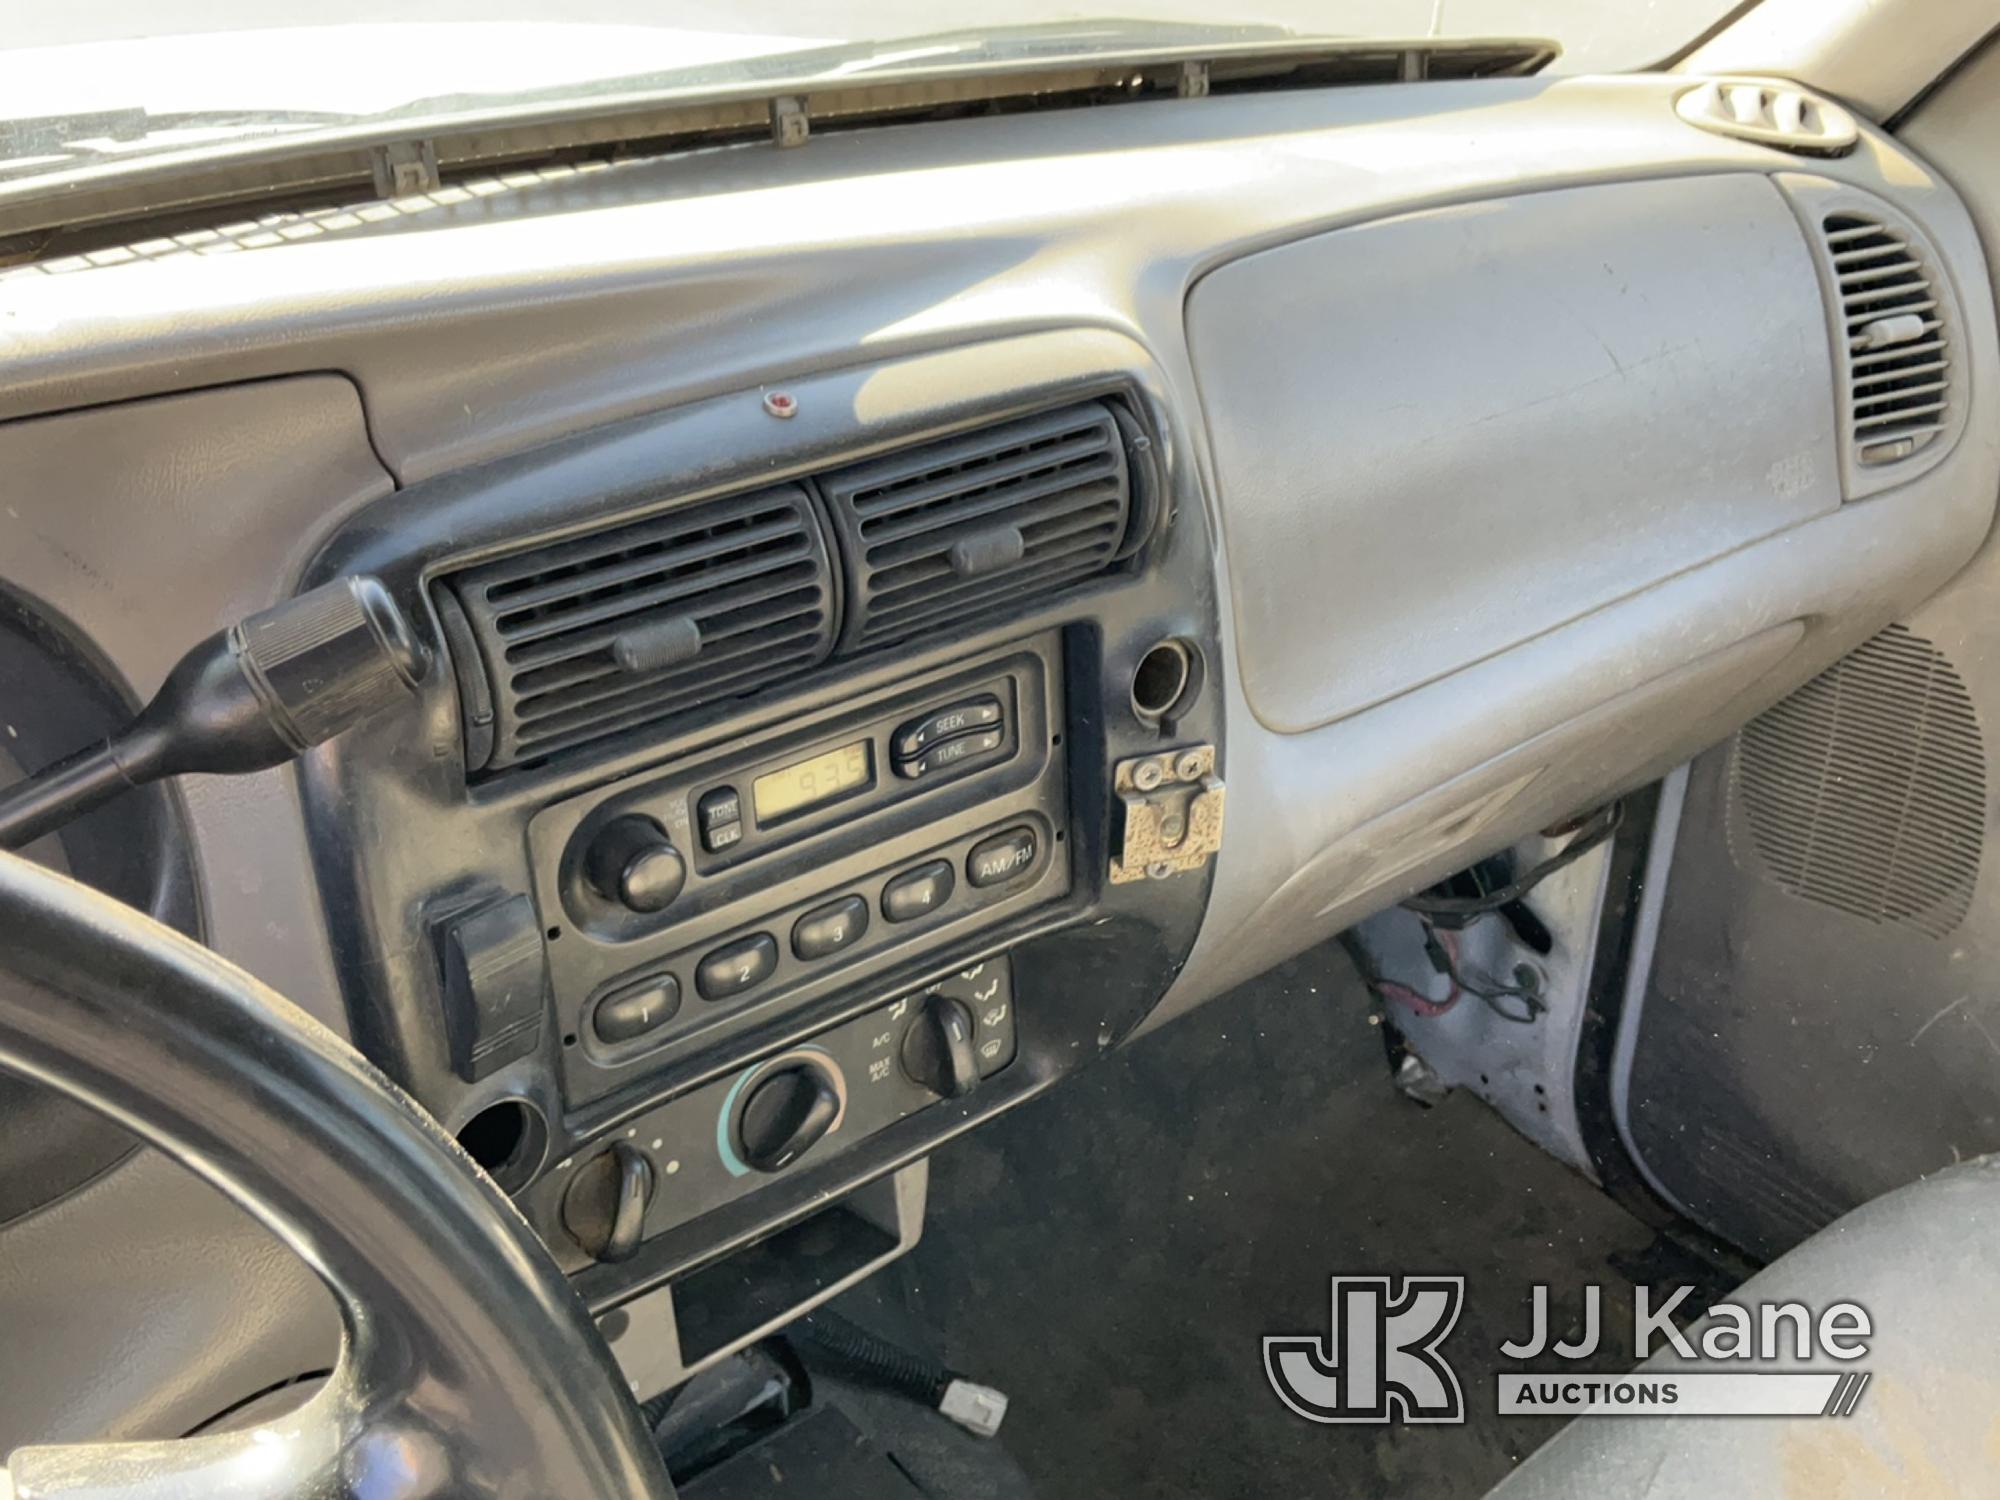 (Jurupa Valley, CA) 2000 Ford Ranger XL Pickup Truck Runs & Moves, Missing Drivers Side Door, Paint